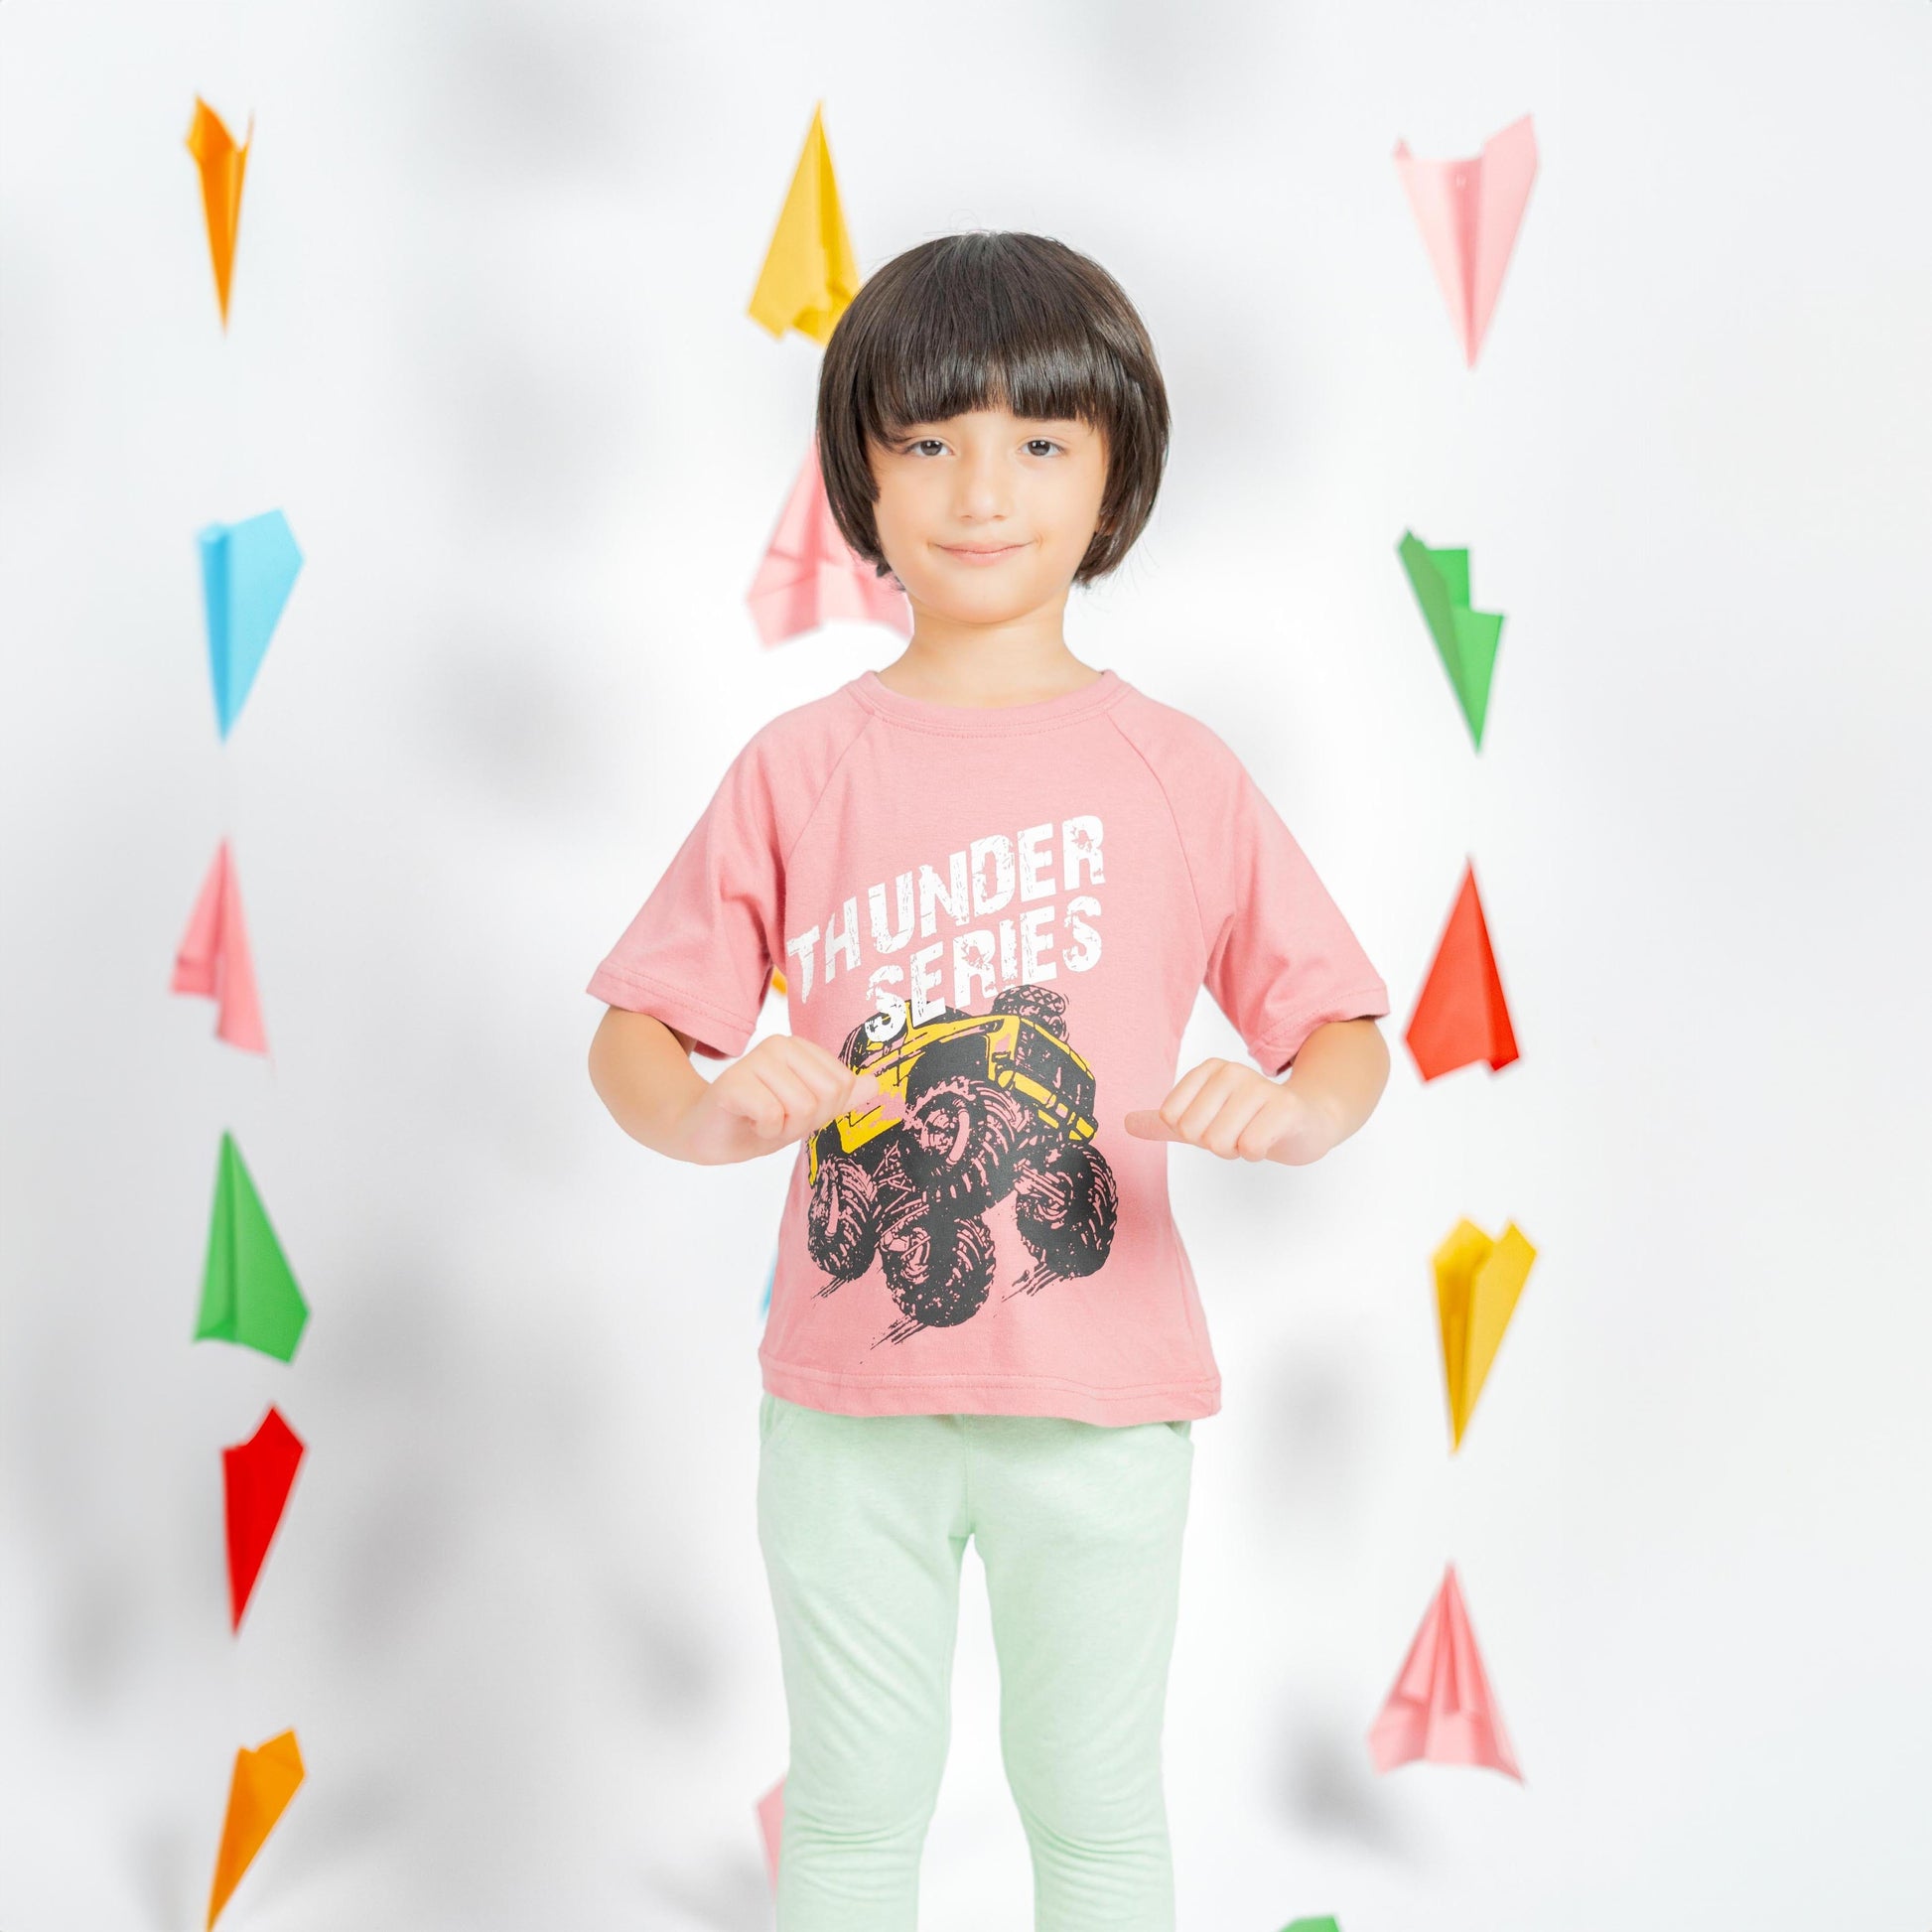 Minoti Kid's Thunder Series Printed Tee Shirt Boy's Tee Shirt SZK Light Plum 3-4 Years 